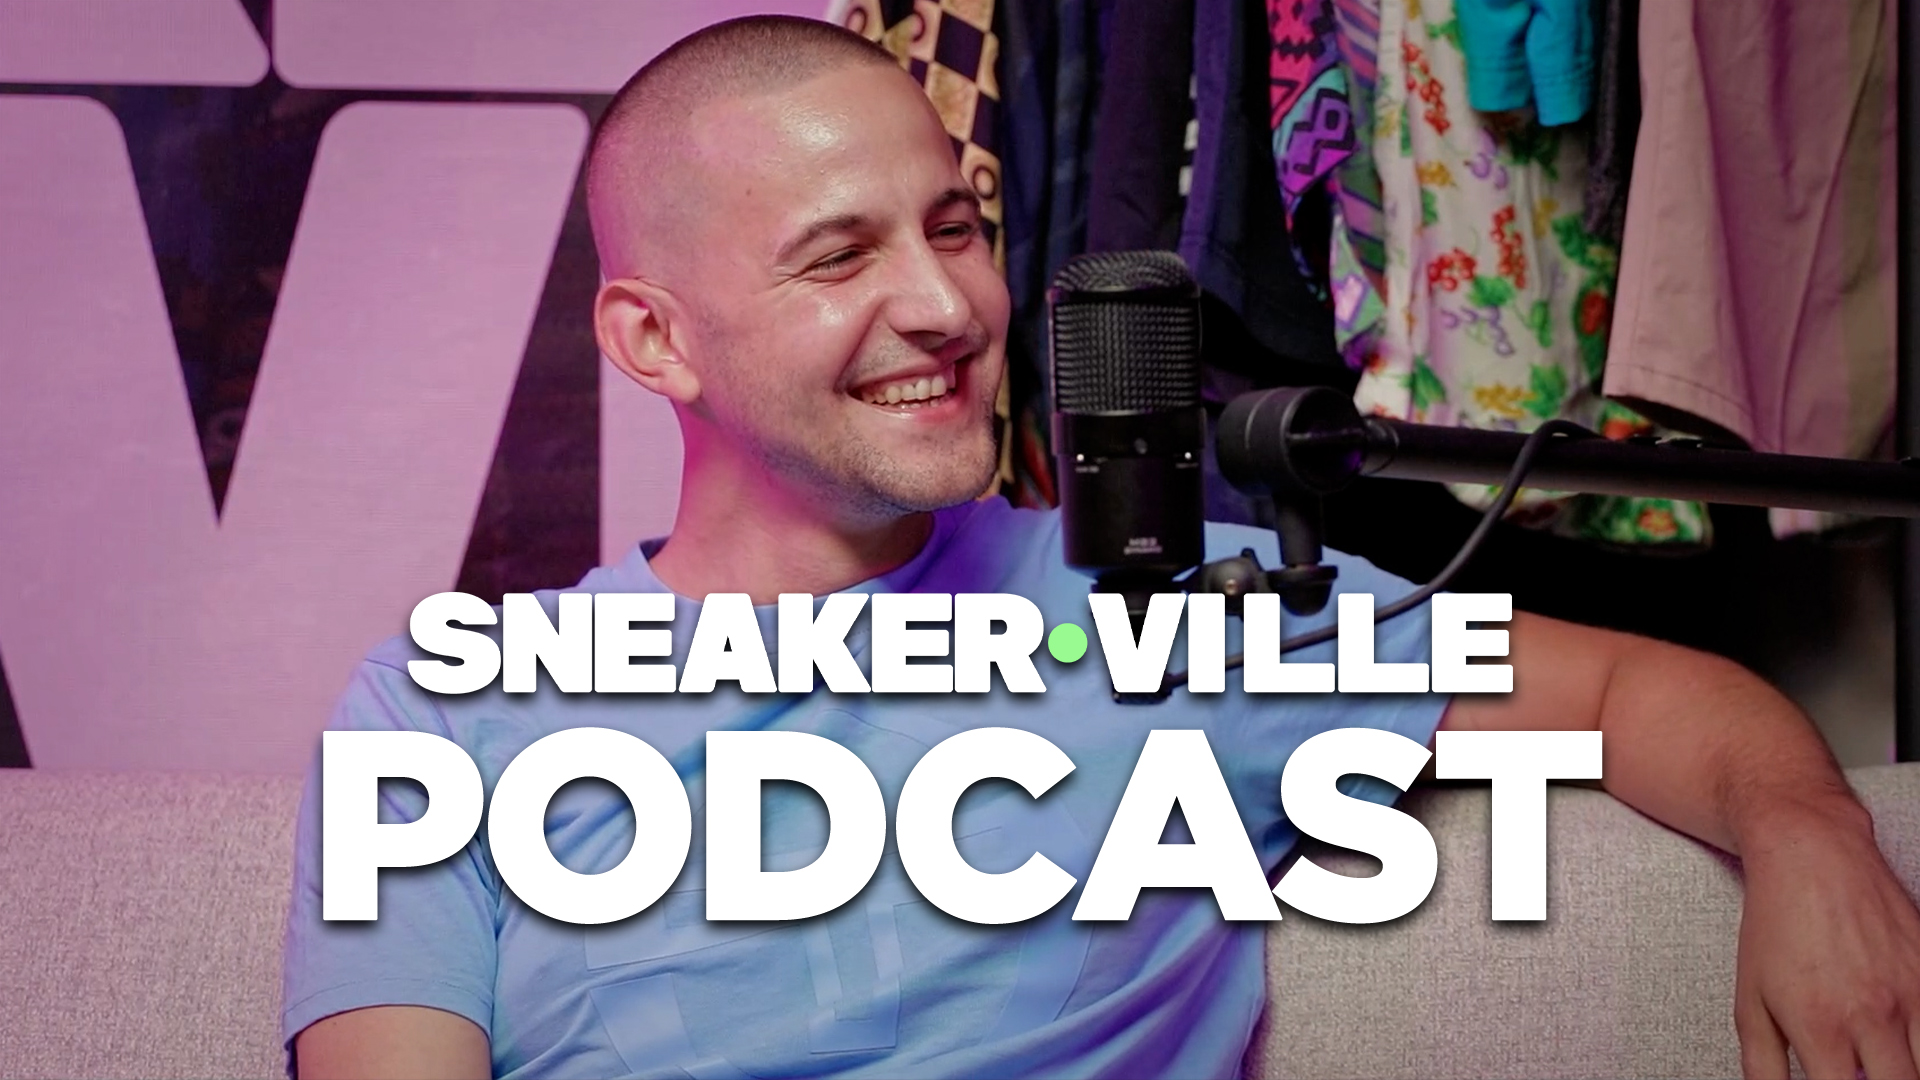 Sneakerville Podcast – Marlon Brutal